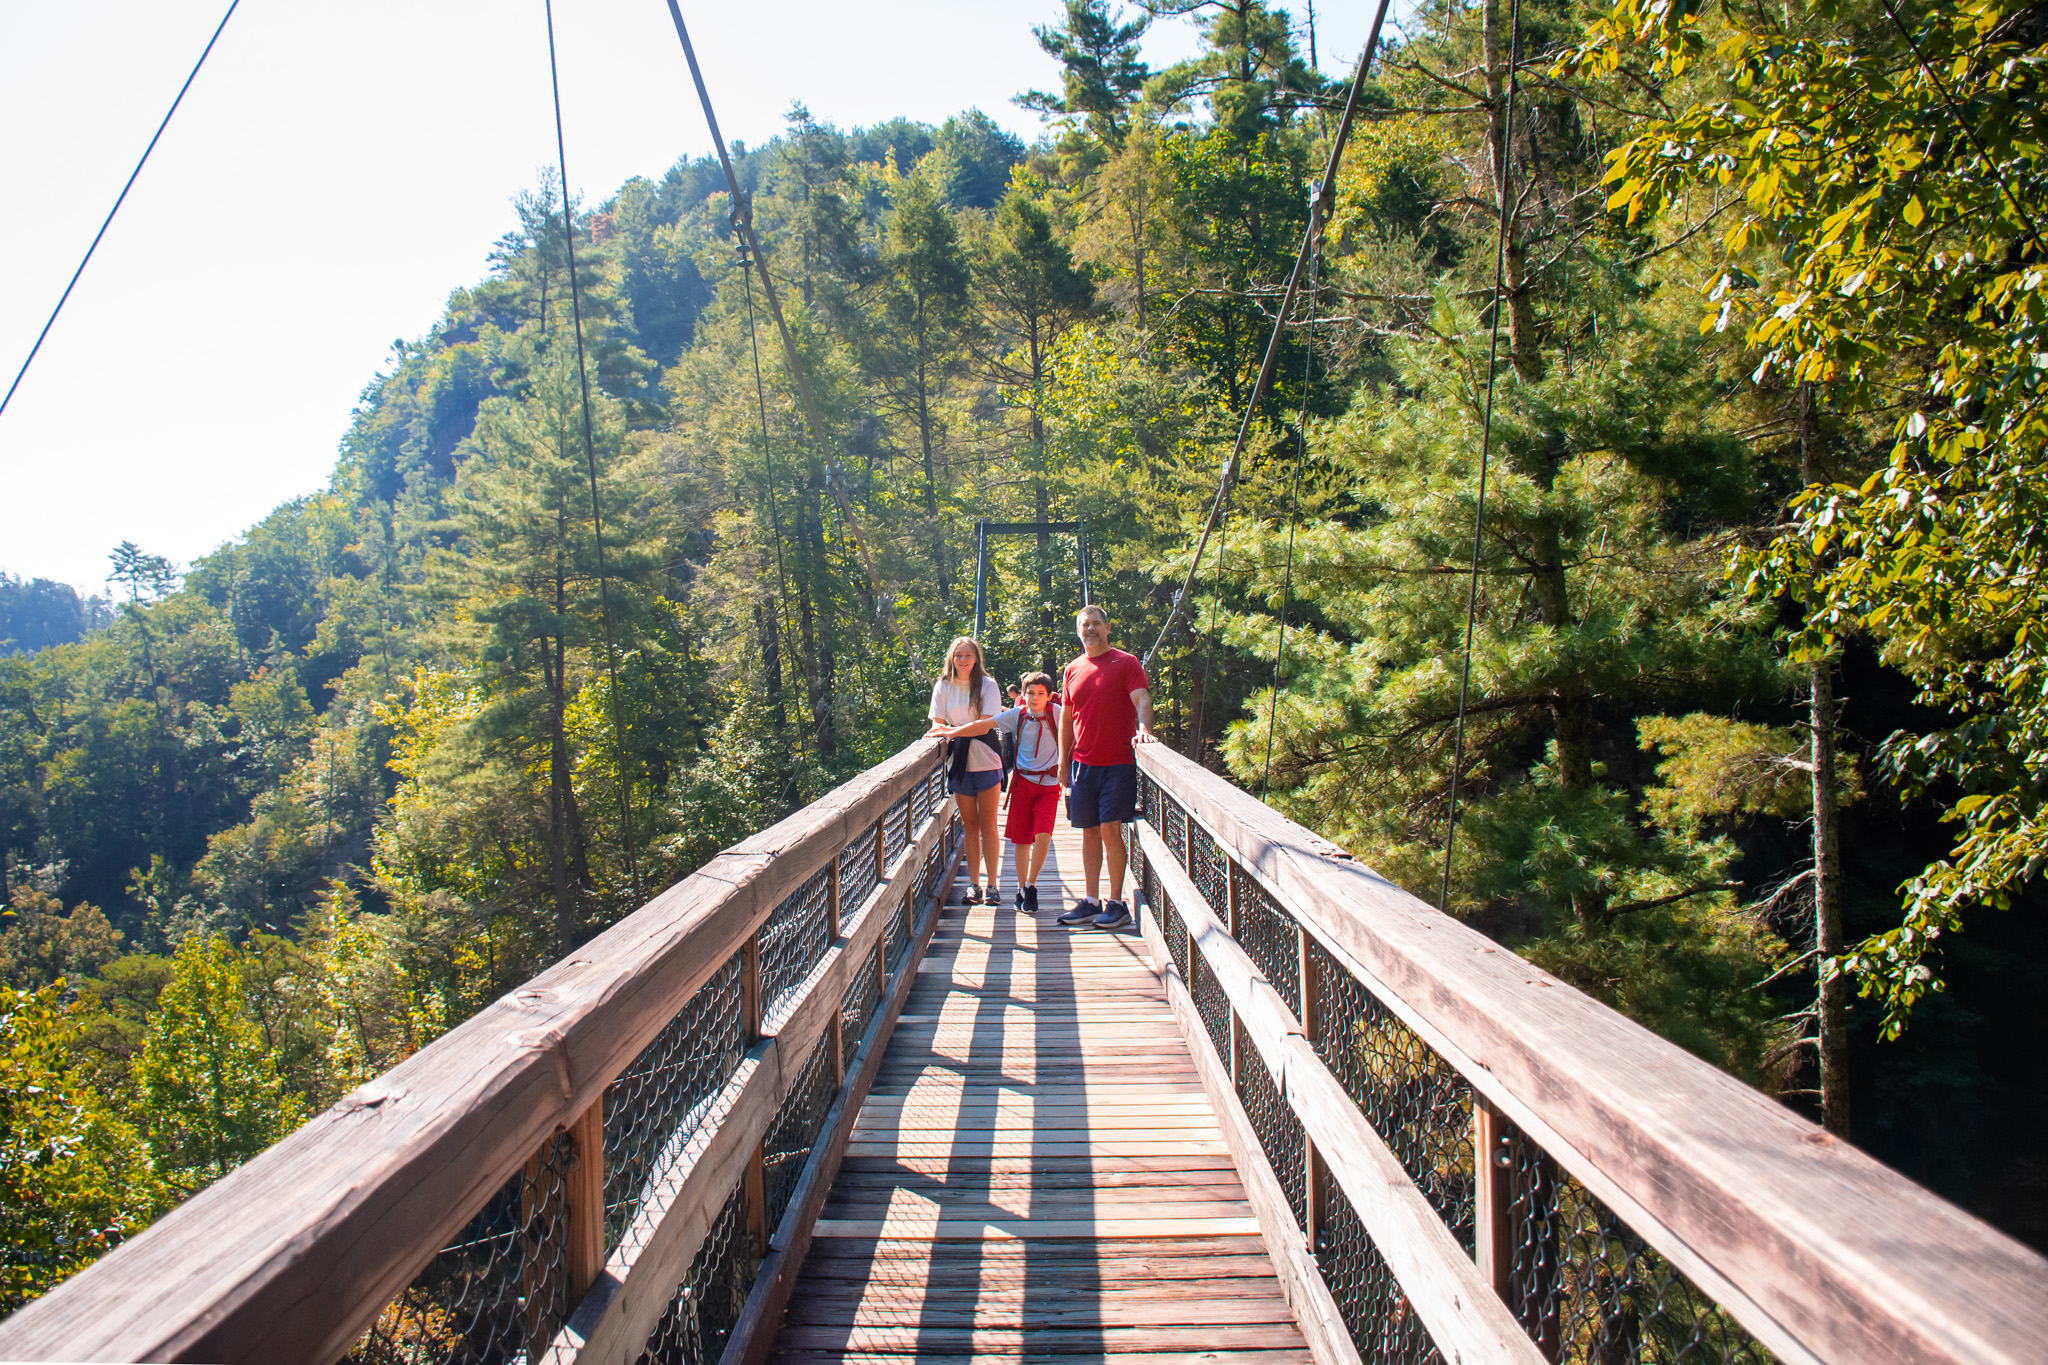 tallulah gorge suspension bridge